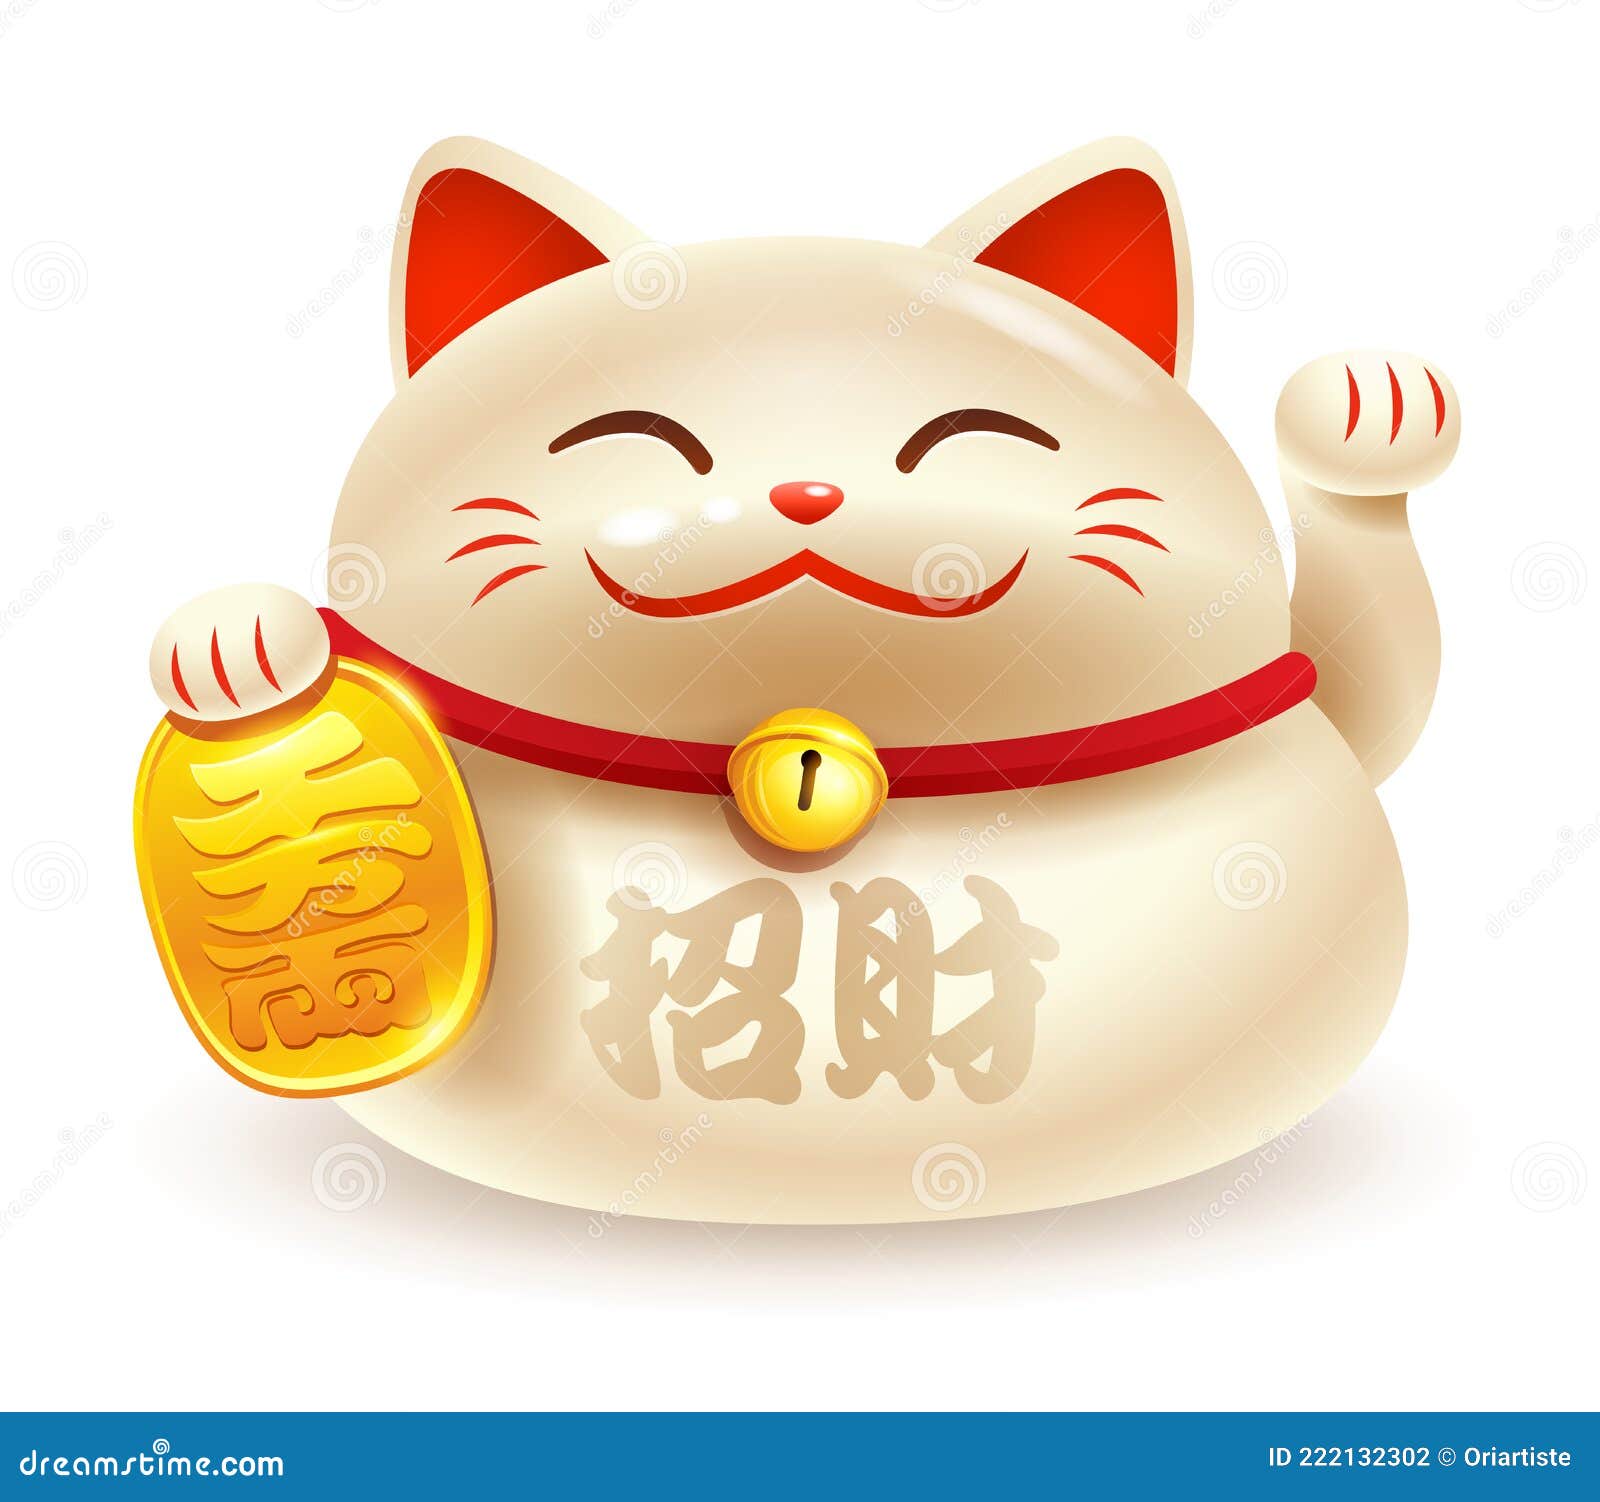 japanese maneki neko. the lucky cat. translation - bringing wealth